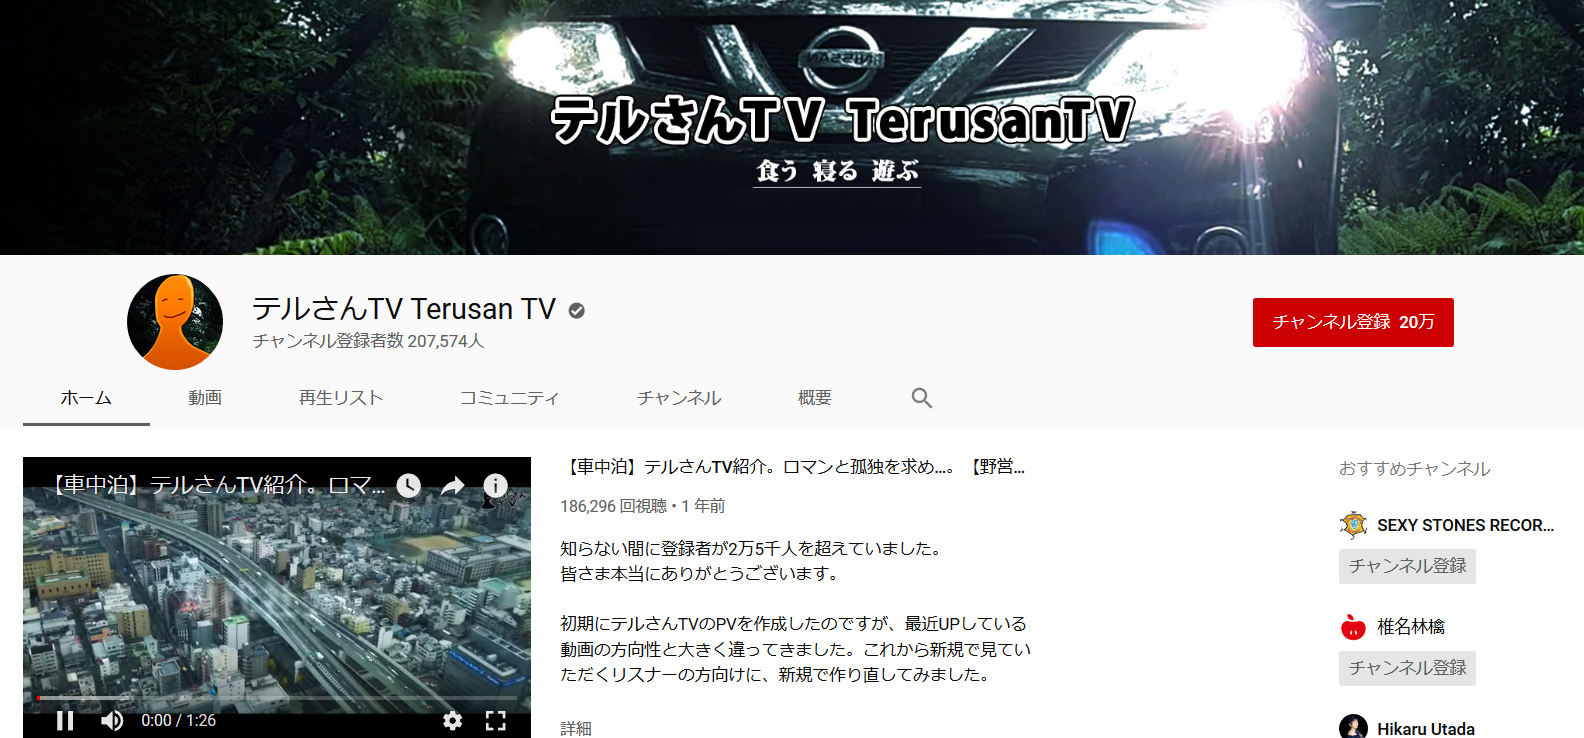 車中泊・キャンプ系おすすめチャンネル②   テルさんTV （TerusanTV）